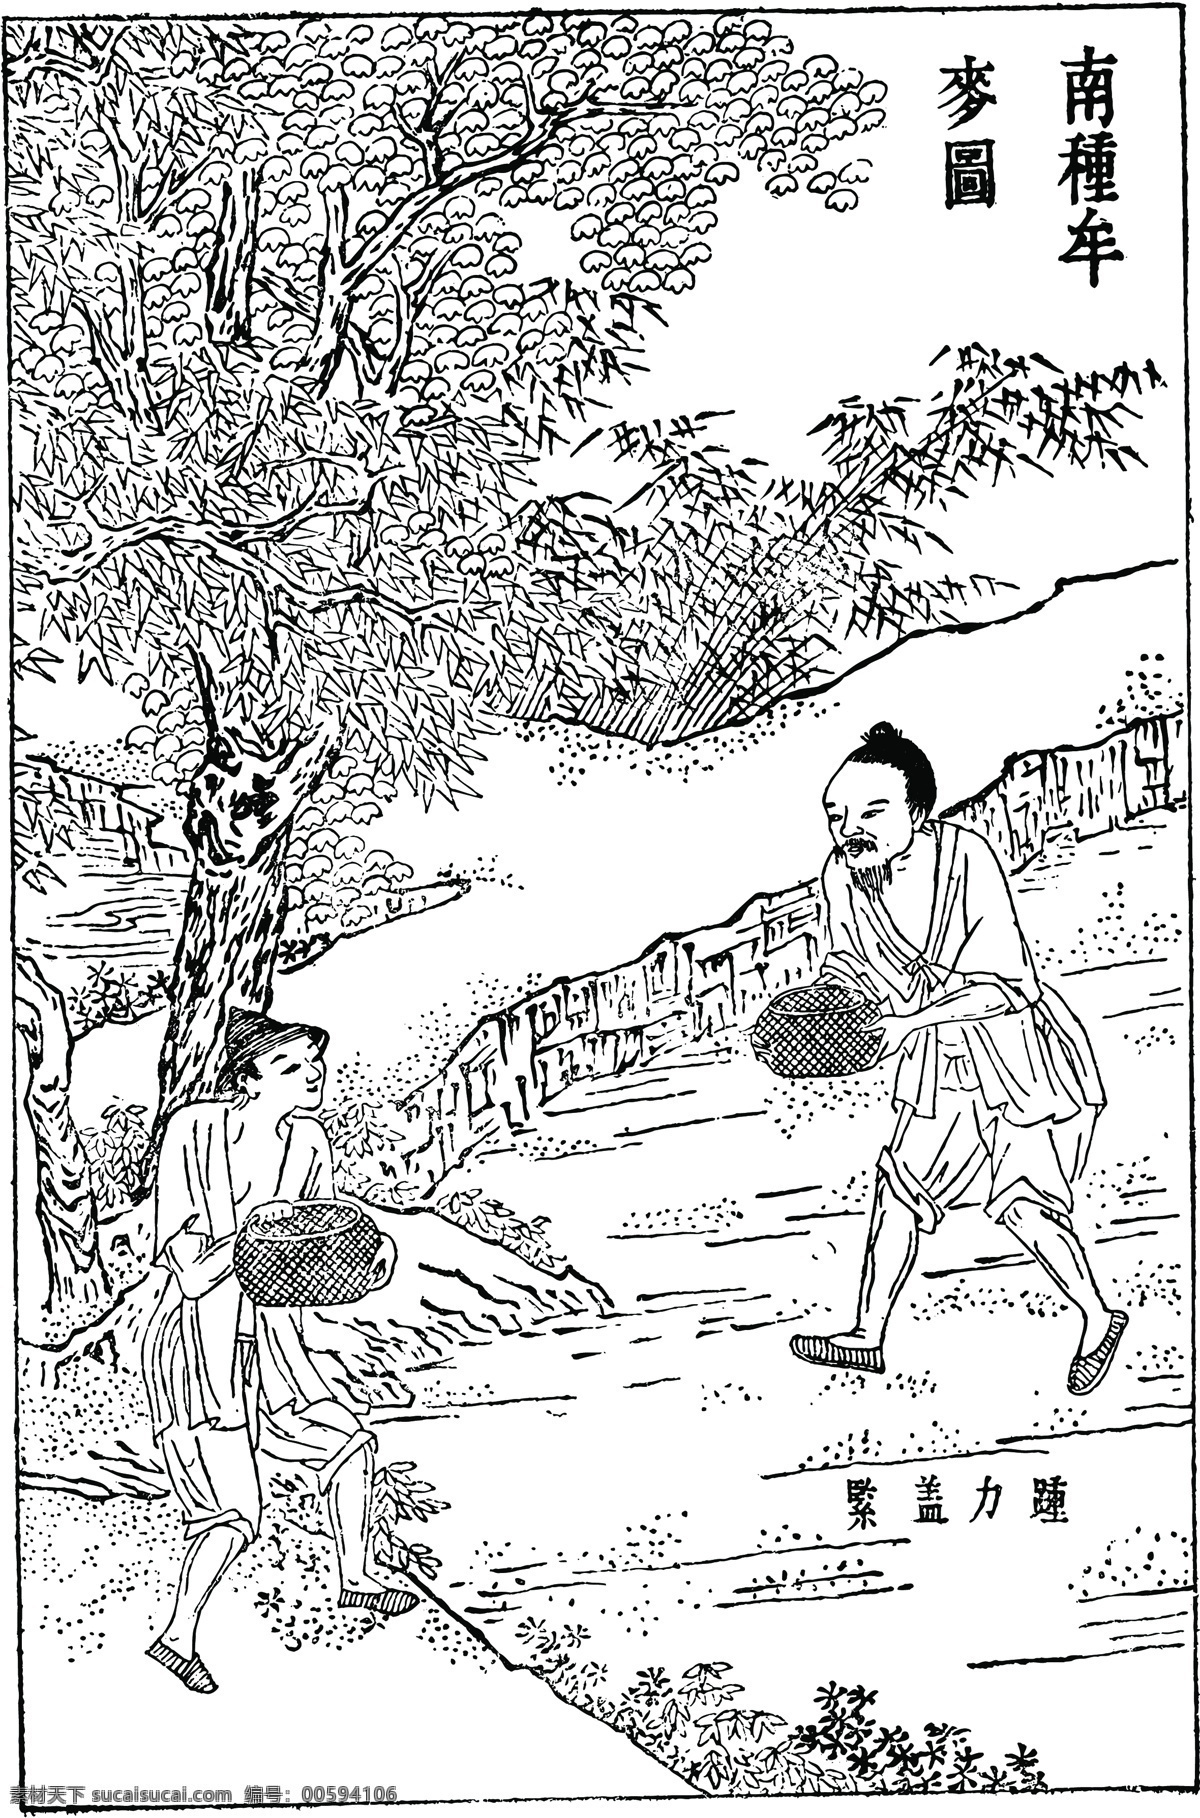 天工开物 木刻版画 中国 传统文化 中国传统文化 设计素材 版画世界 书画美术 白色